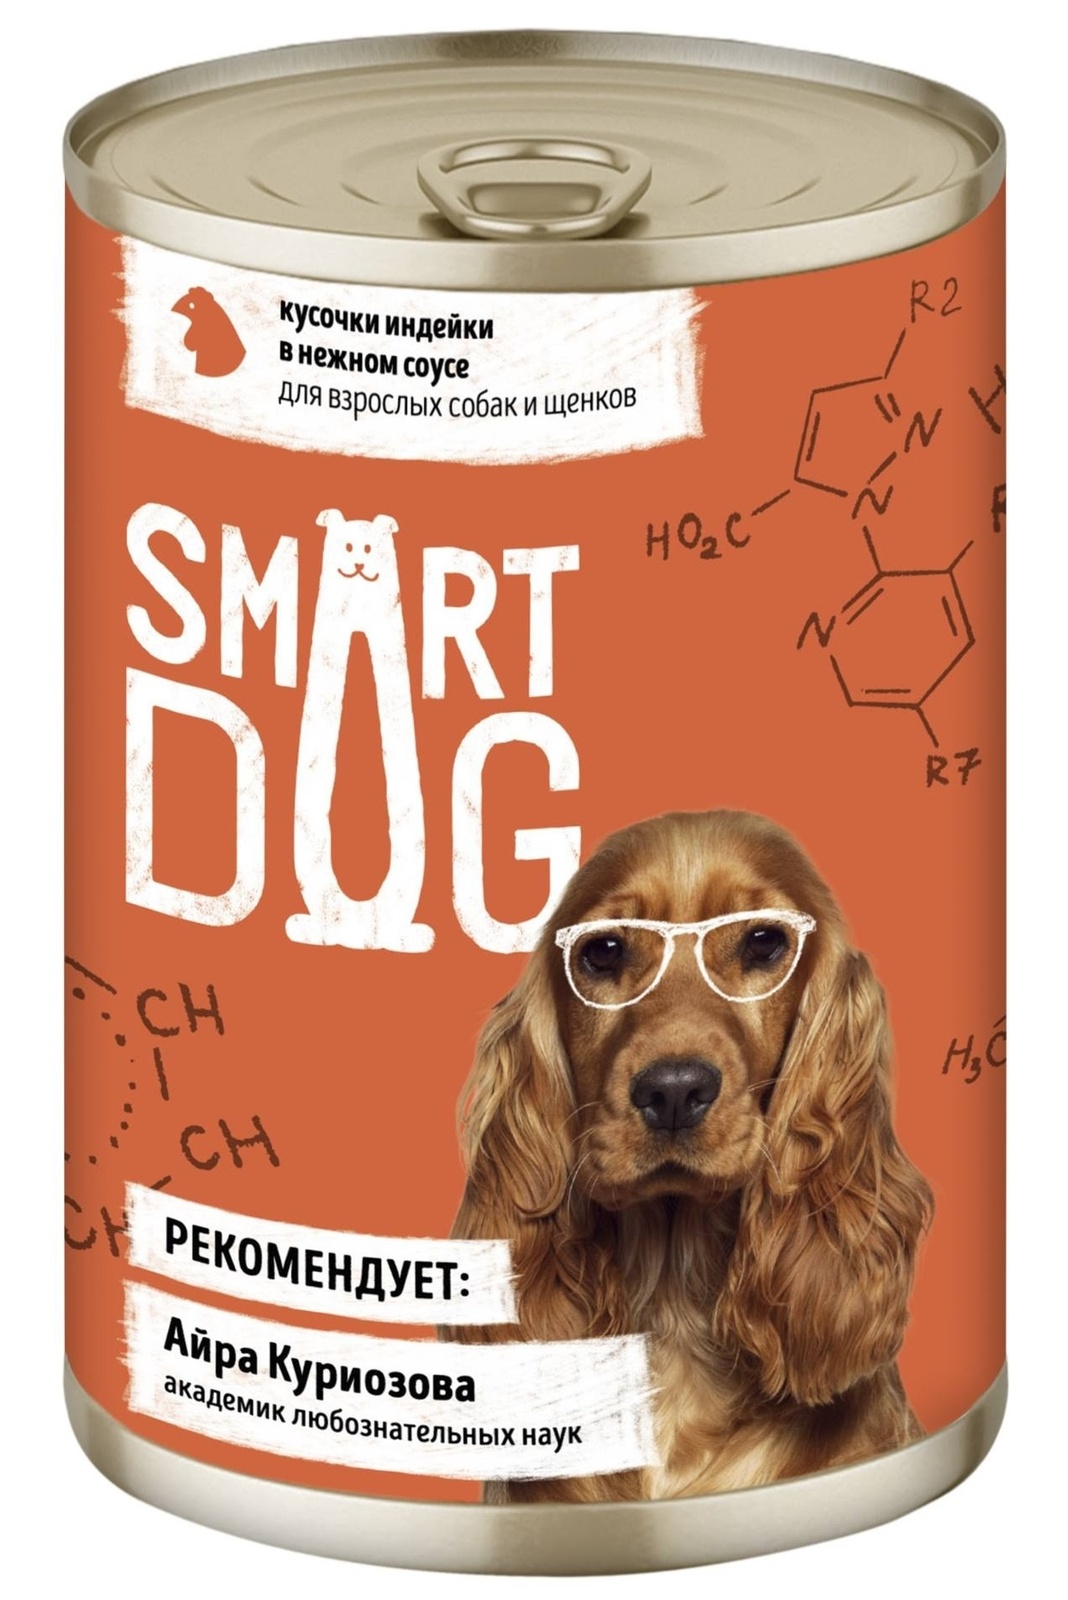 Smart Dog консервы Smart Dog консервы консервы для взрослых собак и щенков кусочки индейки в нежном соусе (240 г)